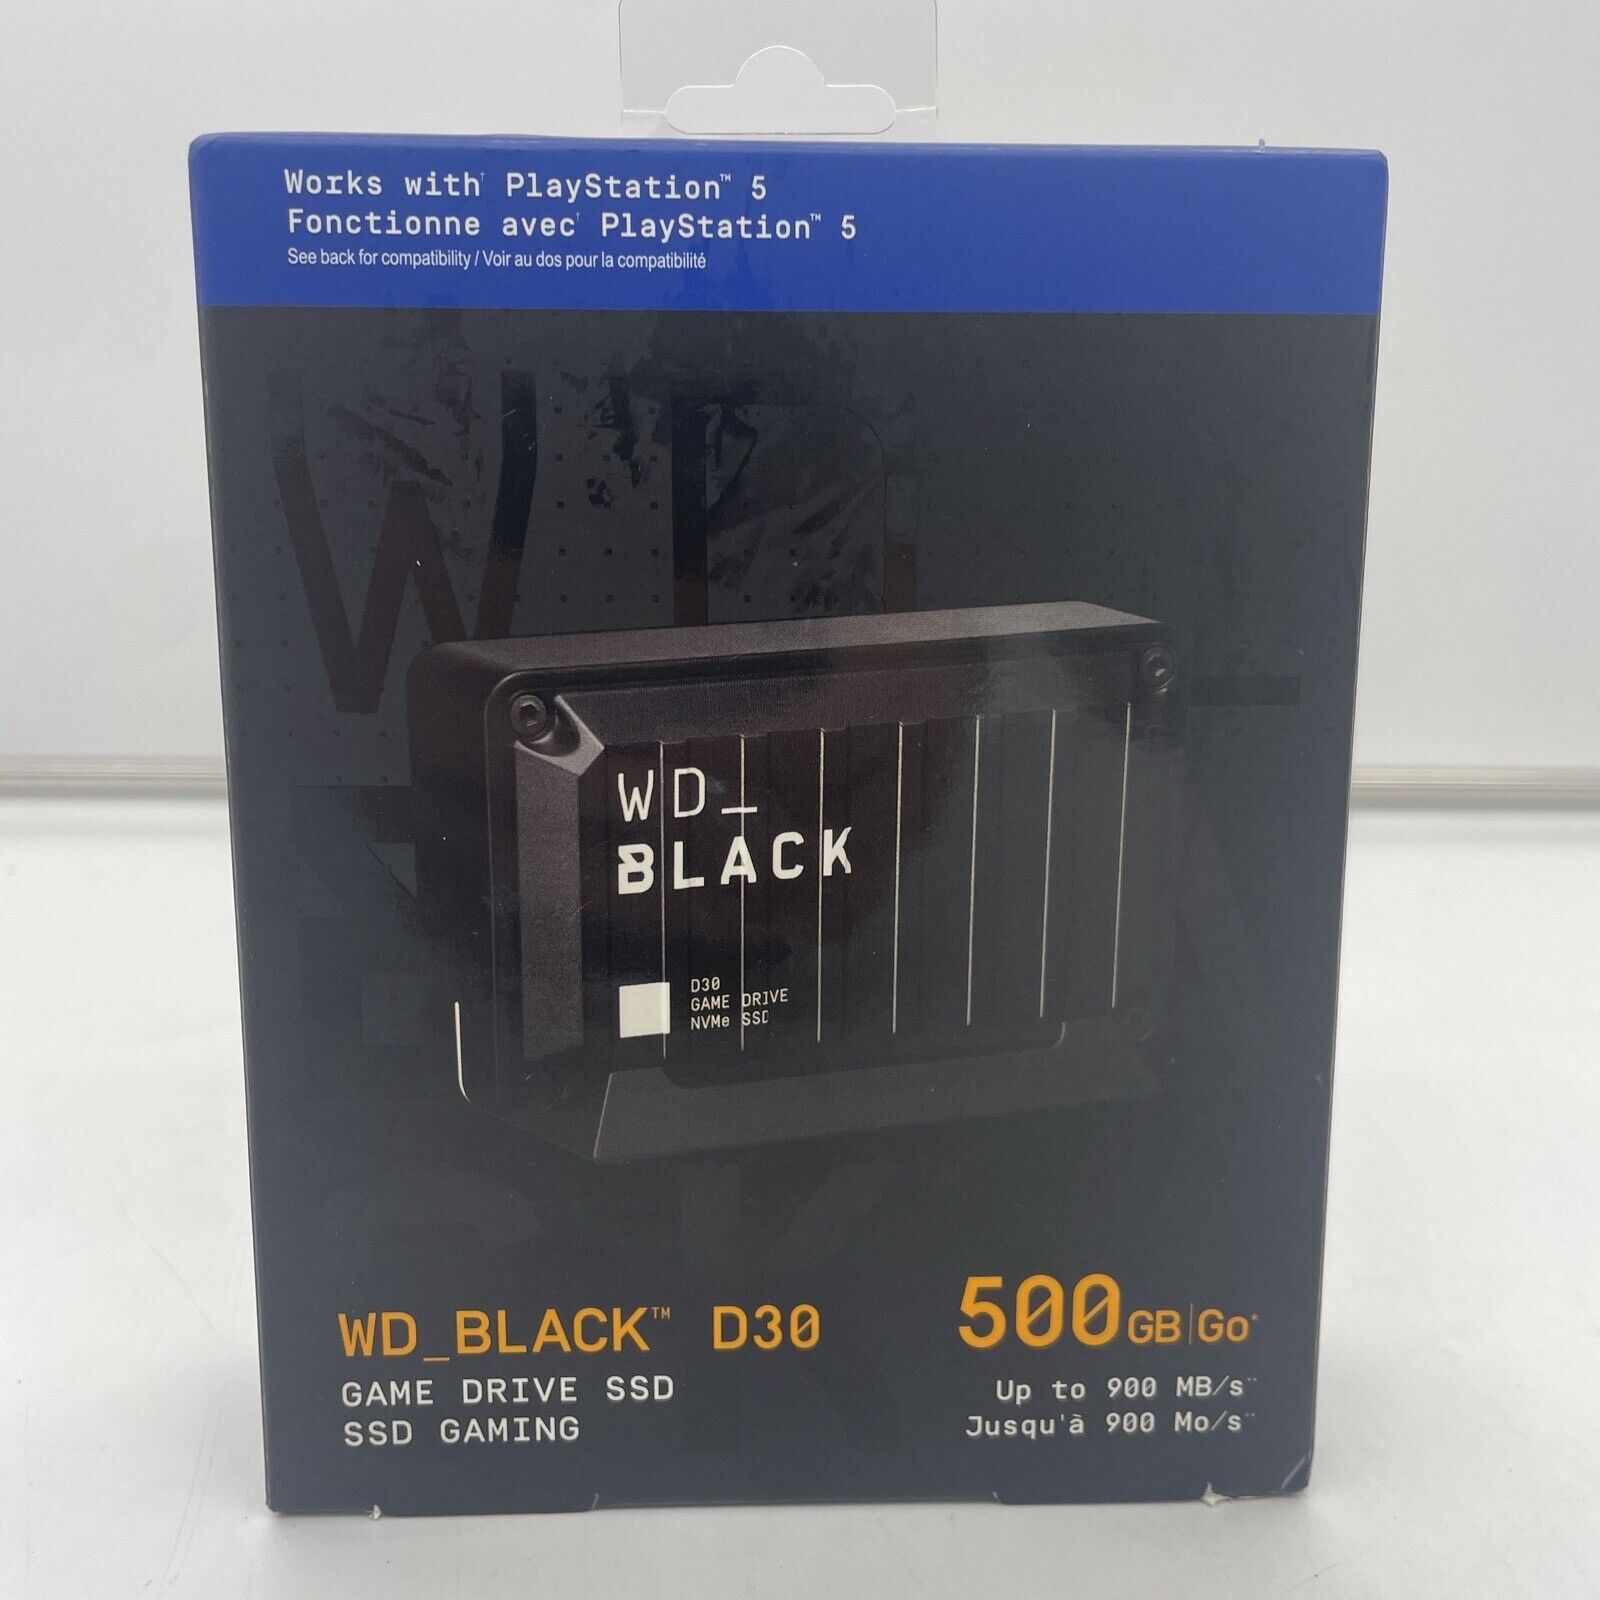 WD BLACK D30 500GB SSD, USB-C, External Solid State Drive - Black...